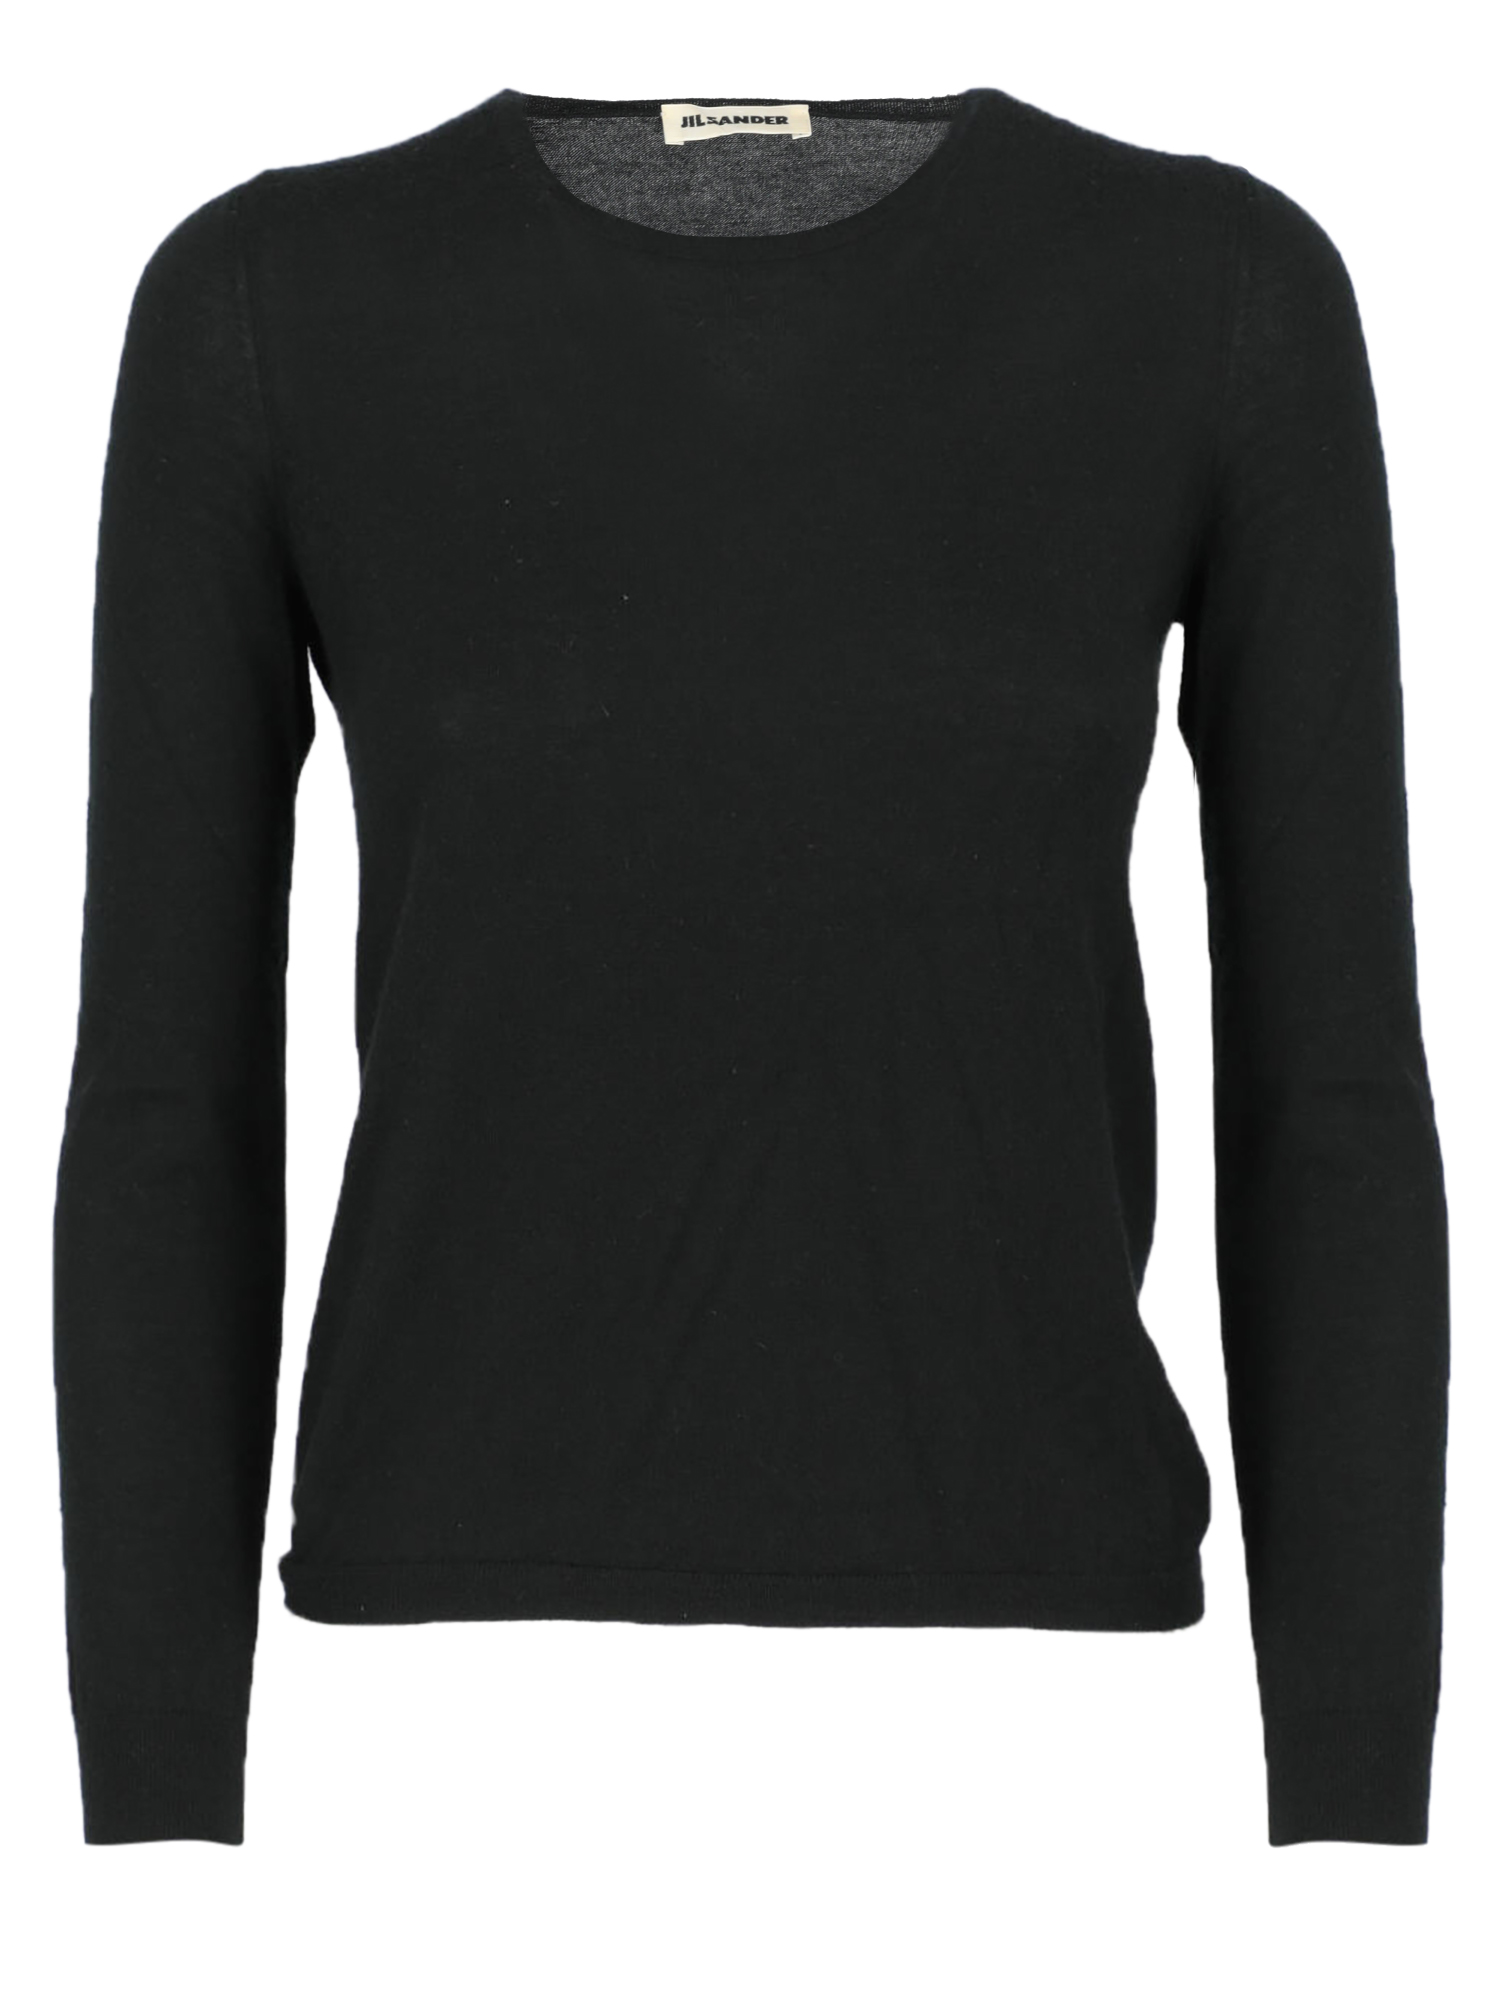 T-shirts Et Tops Pour Femme - Jil Sander - En Wool Black - Taille:  -